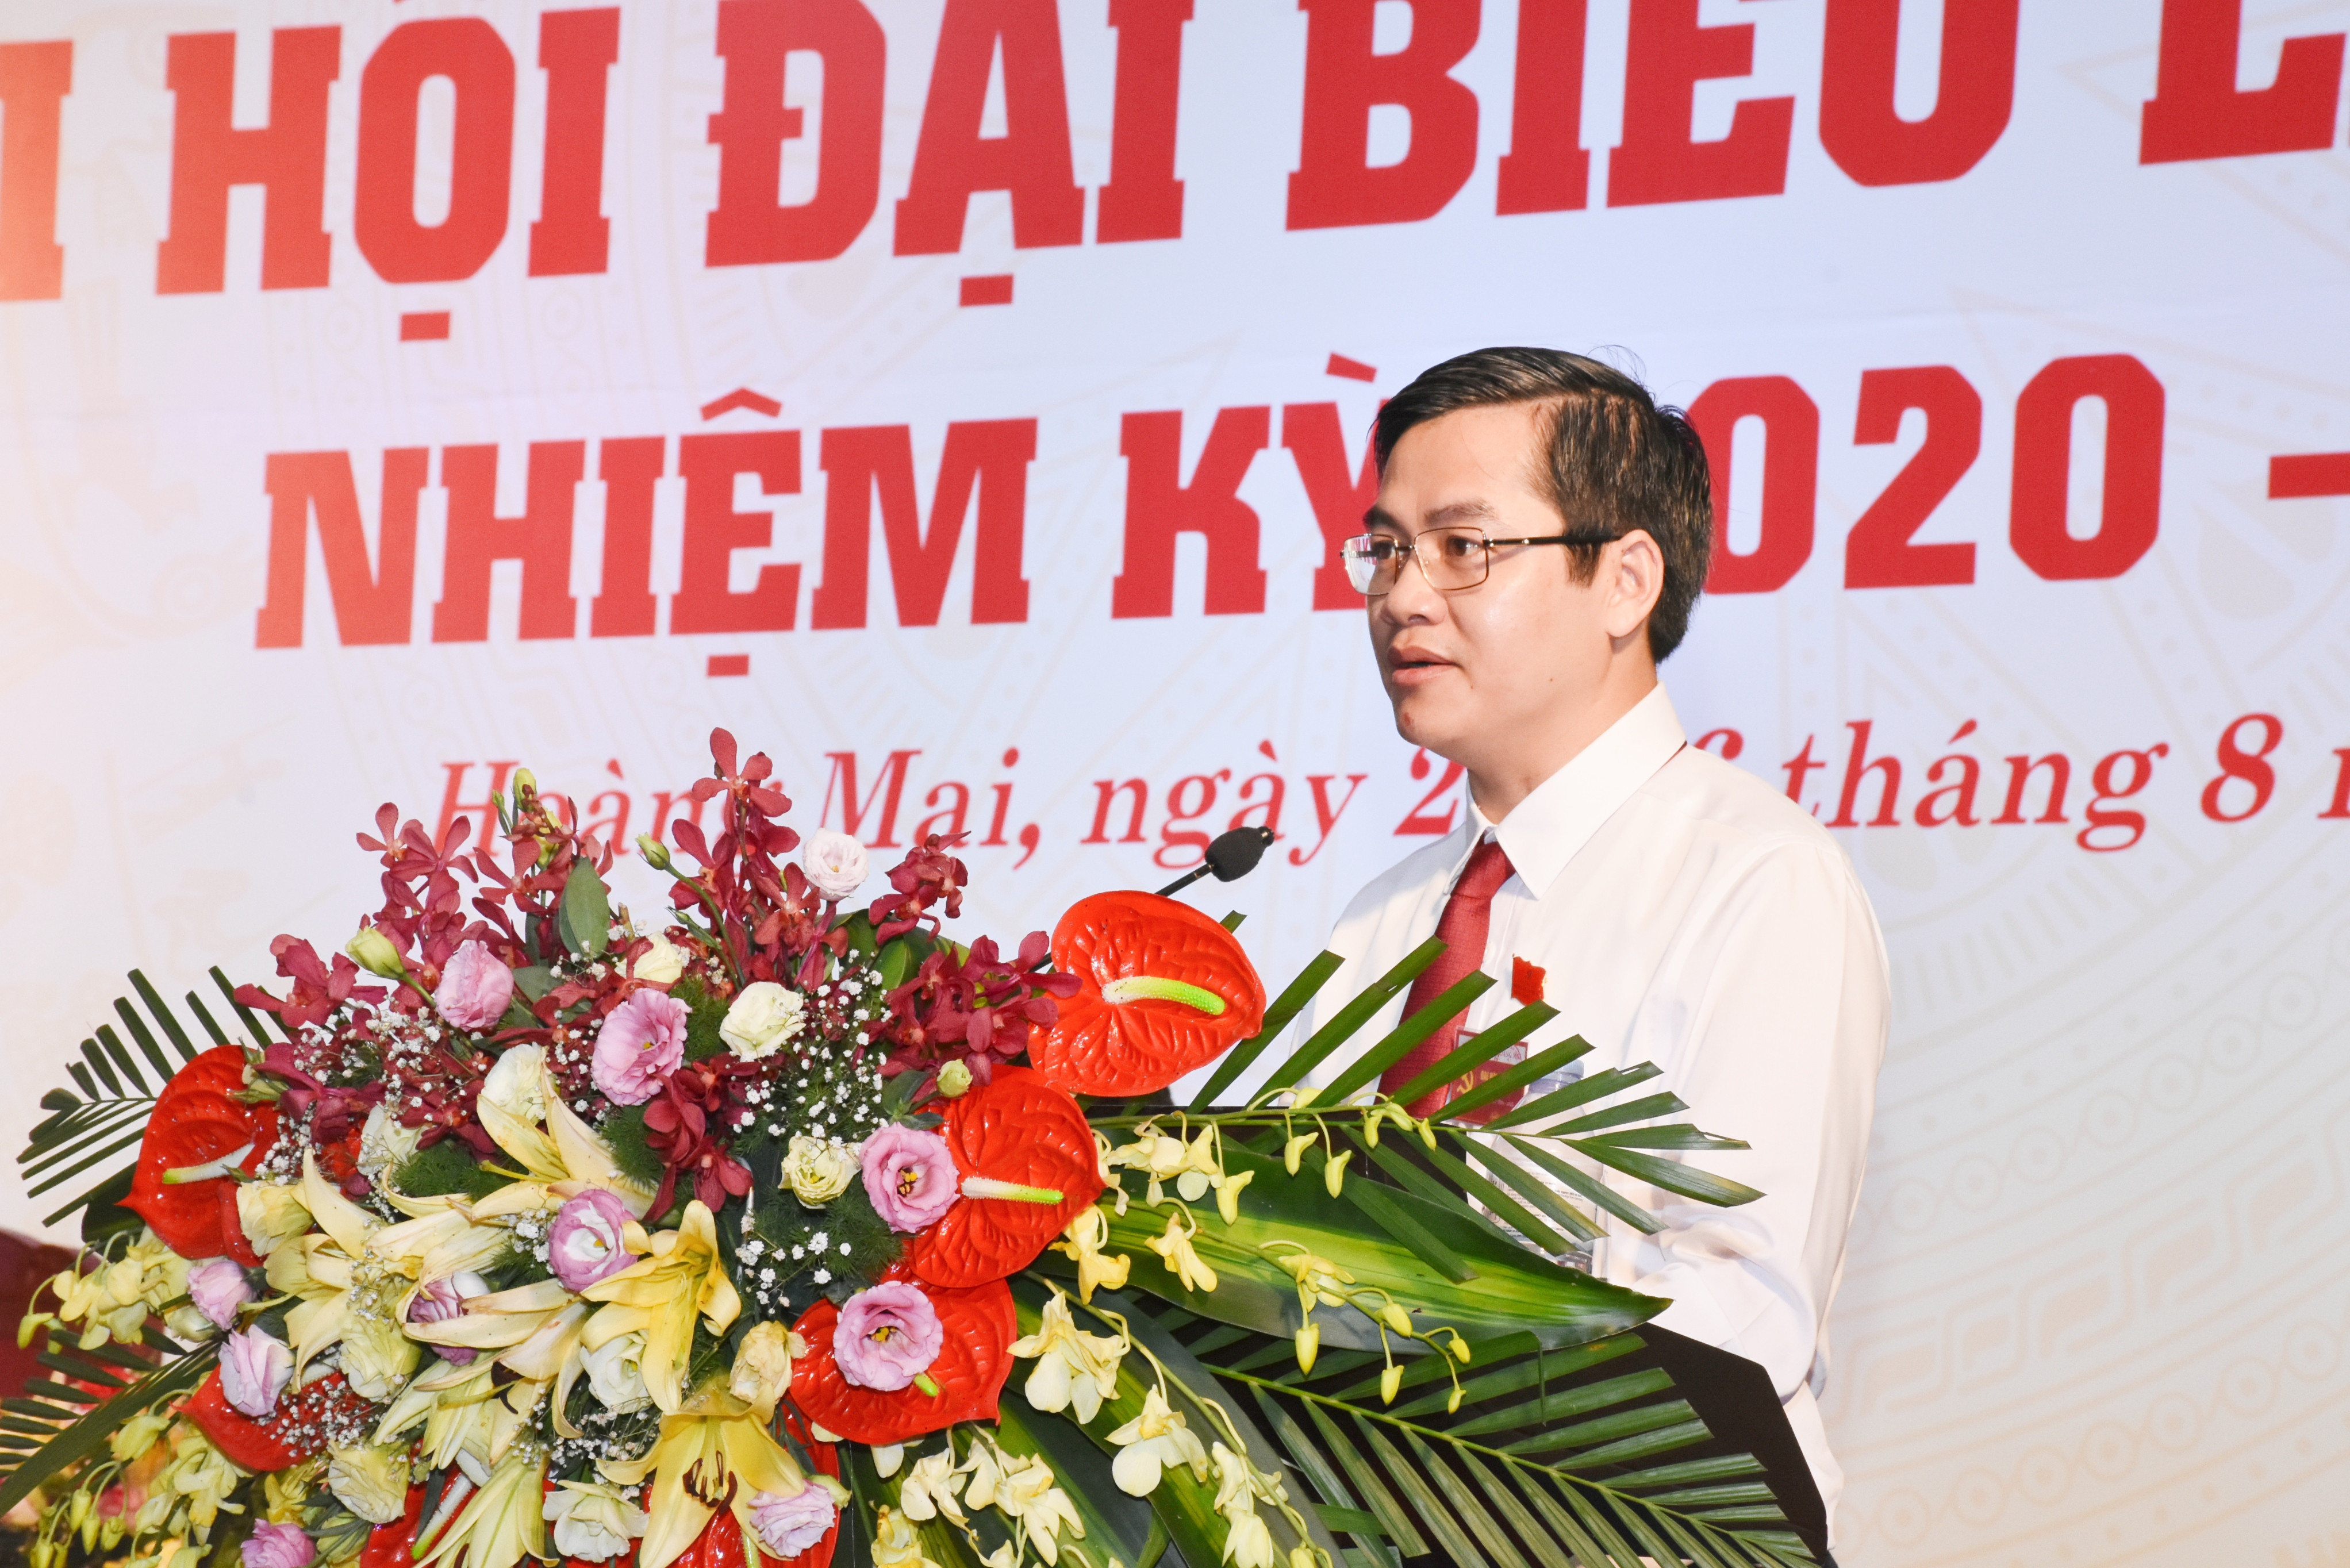 Đồng chí Nguyễn Hữu An - Phó Bí thư Thị ủy, Chủ tịch UBND thị xã Hoàng Mai trình bày báo cáo chính trị của Ban chấp hành Đảng bộ thị xã Hoàng Mai lần thứ I